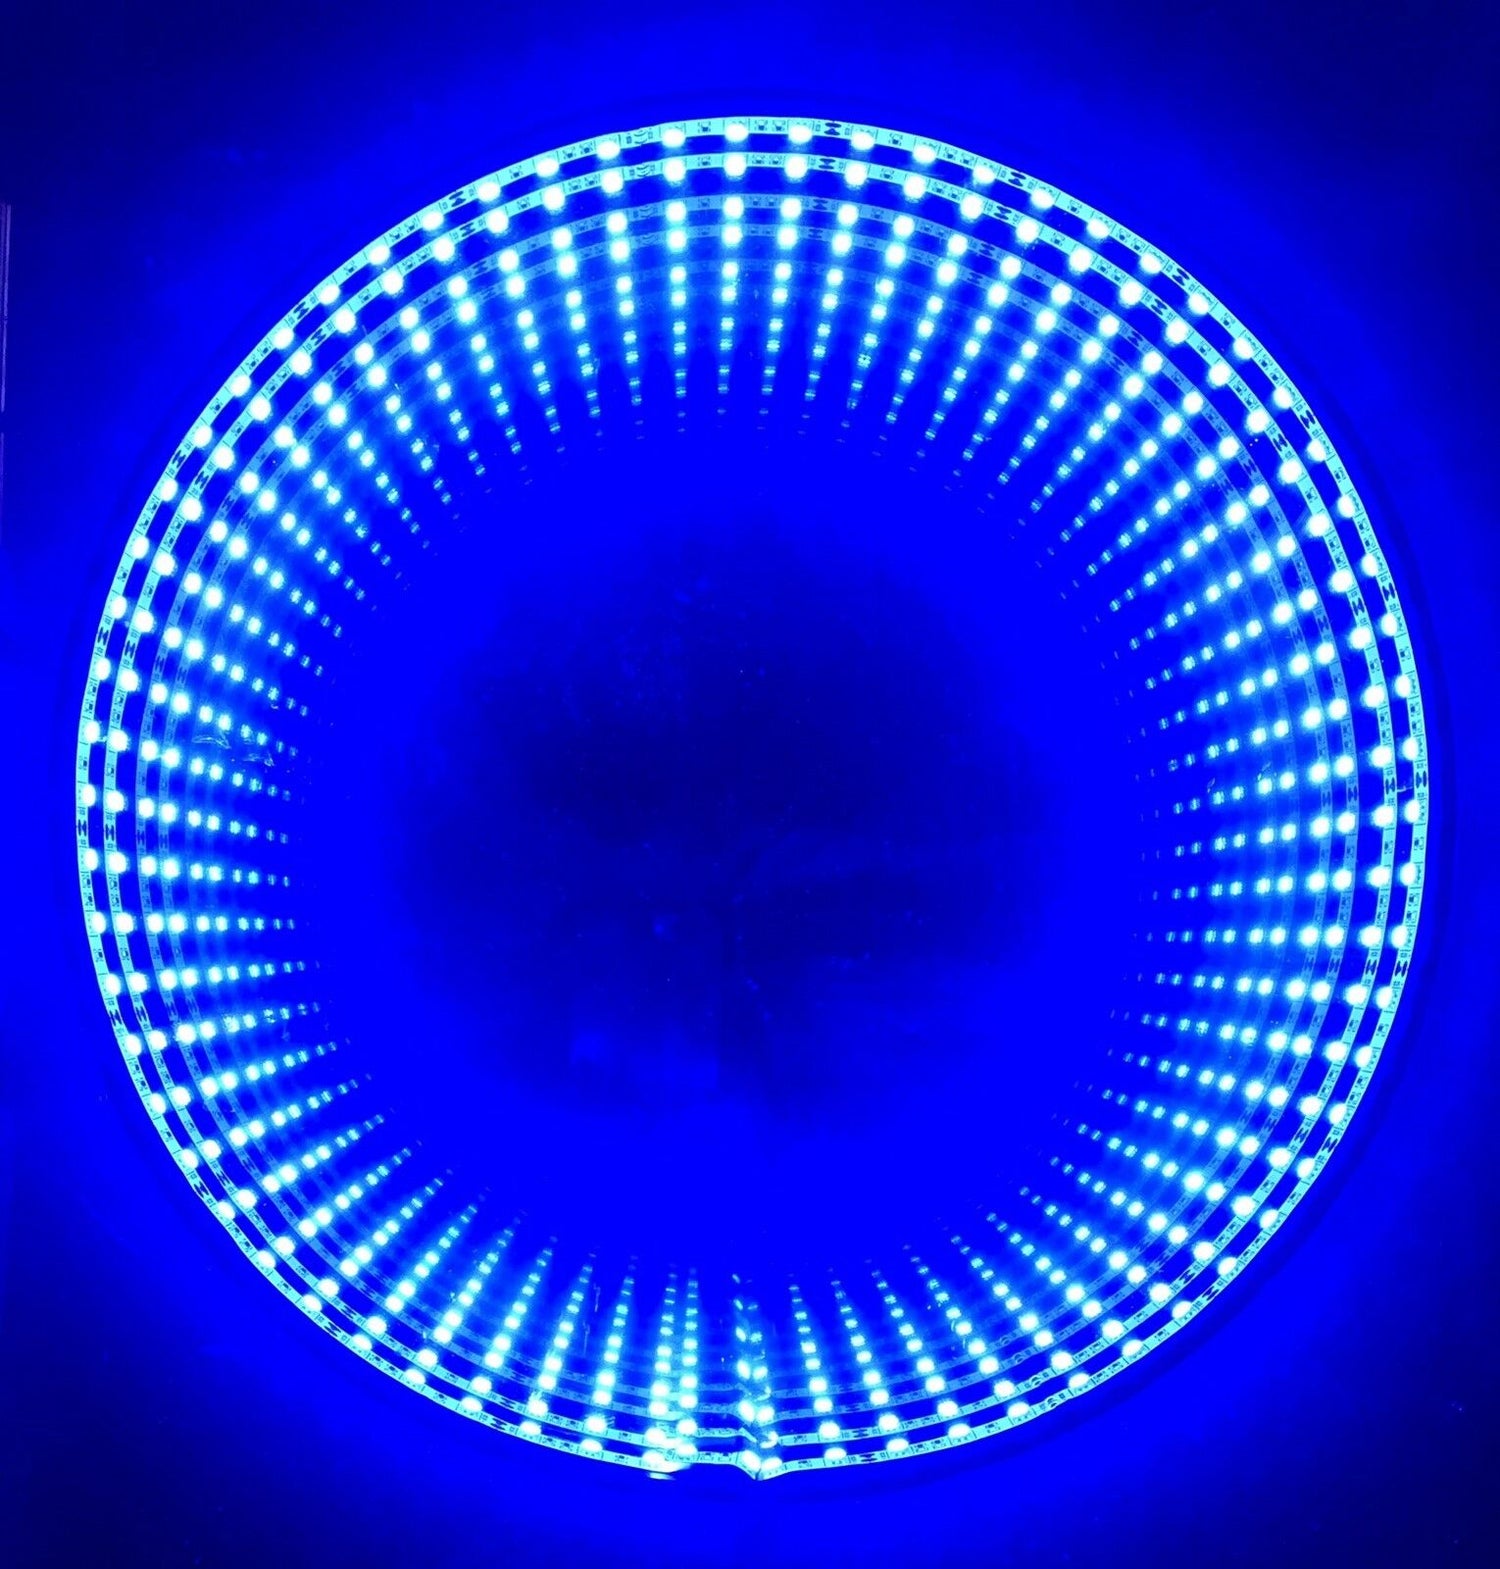 LED Optical Illusion Art